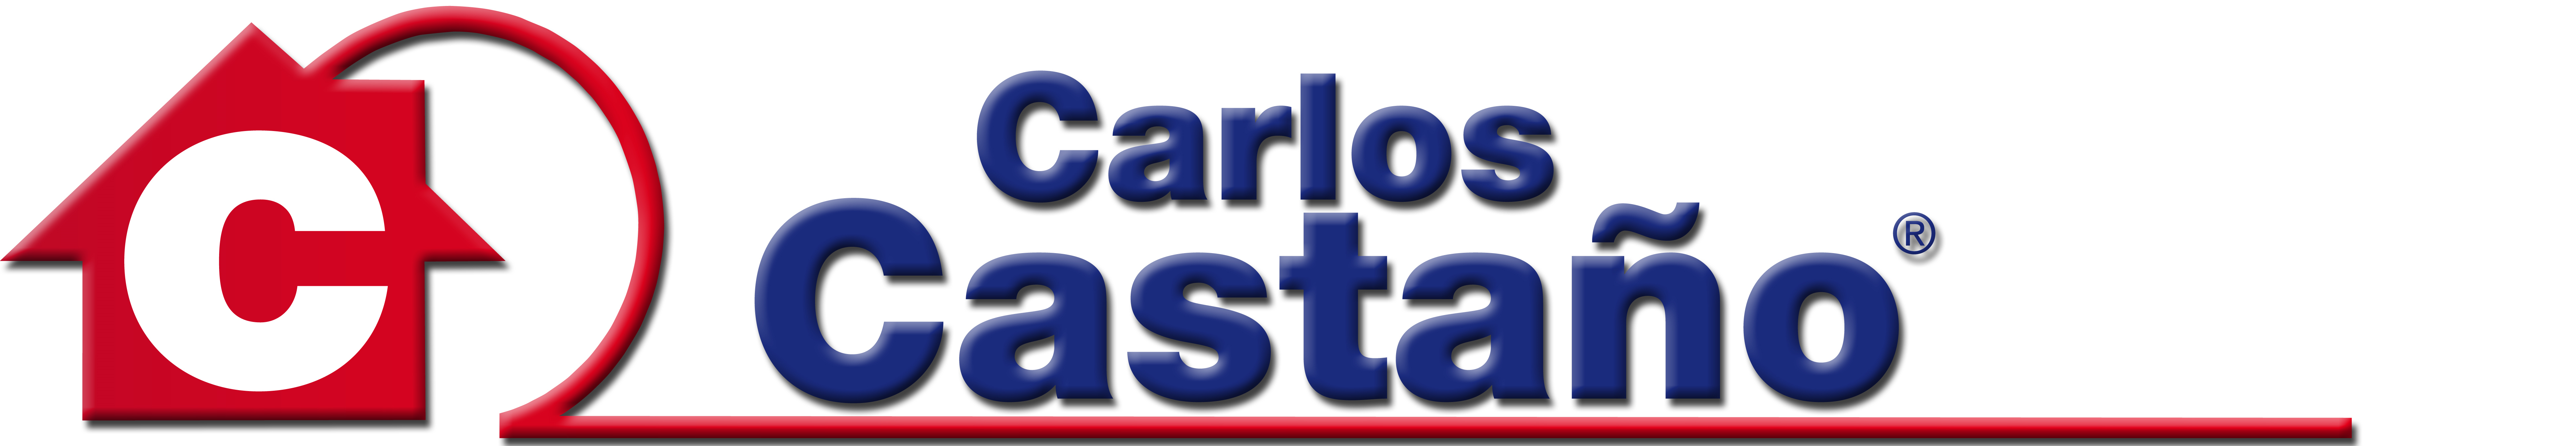 Carlos Castaño Propiedades